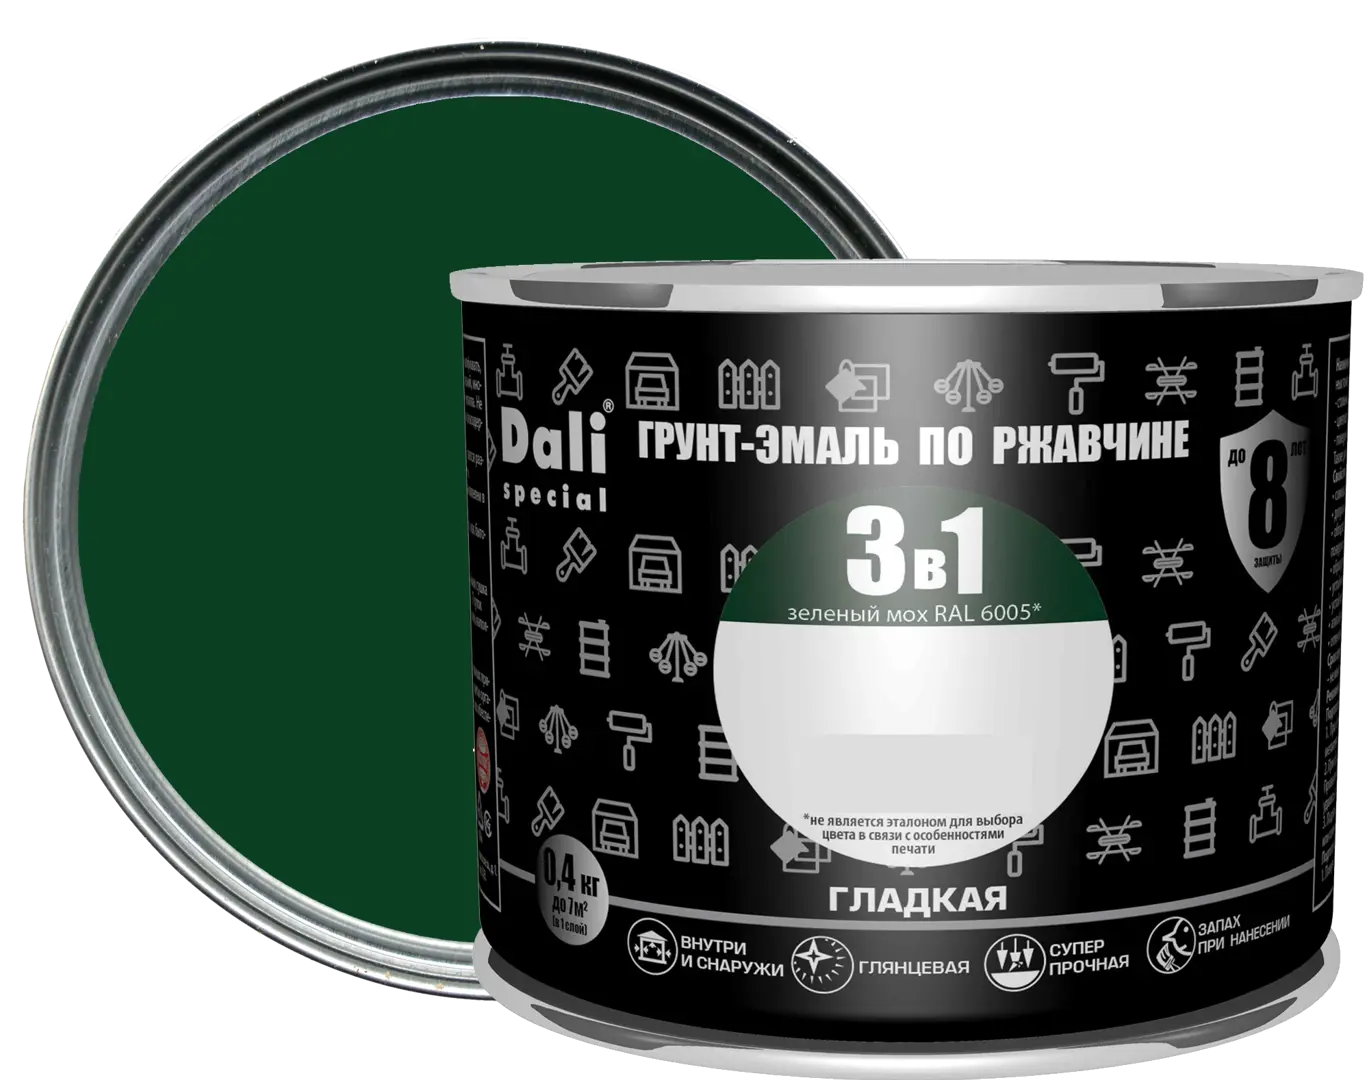 Грунт-эмаль по ржавчине 3 в 1 Dali Special гладкая цвет зелёный мох 0.4 кг RAL 6005 грунт эмаль по ржавчине 3 в 1 profilux гладкая зелёный 2 4 кг